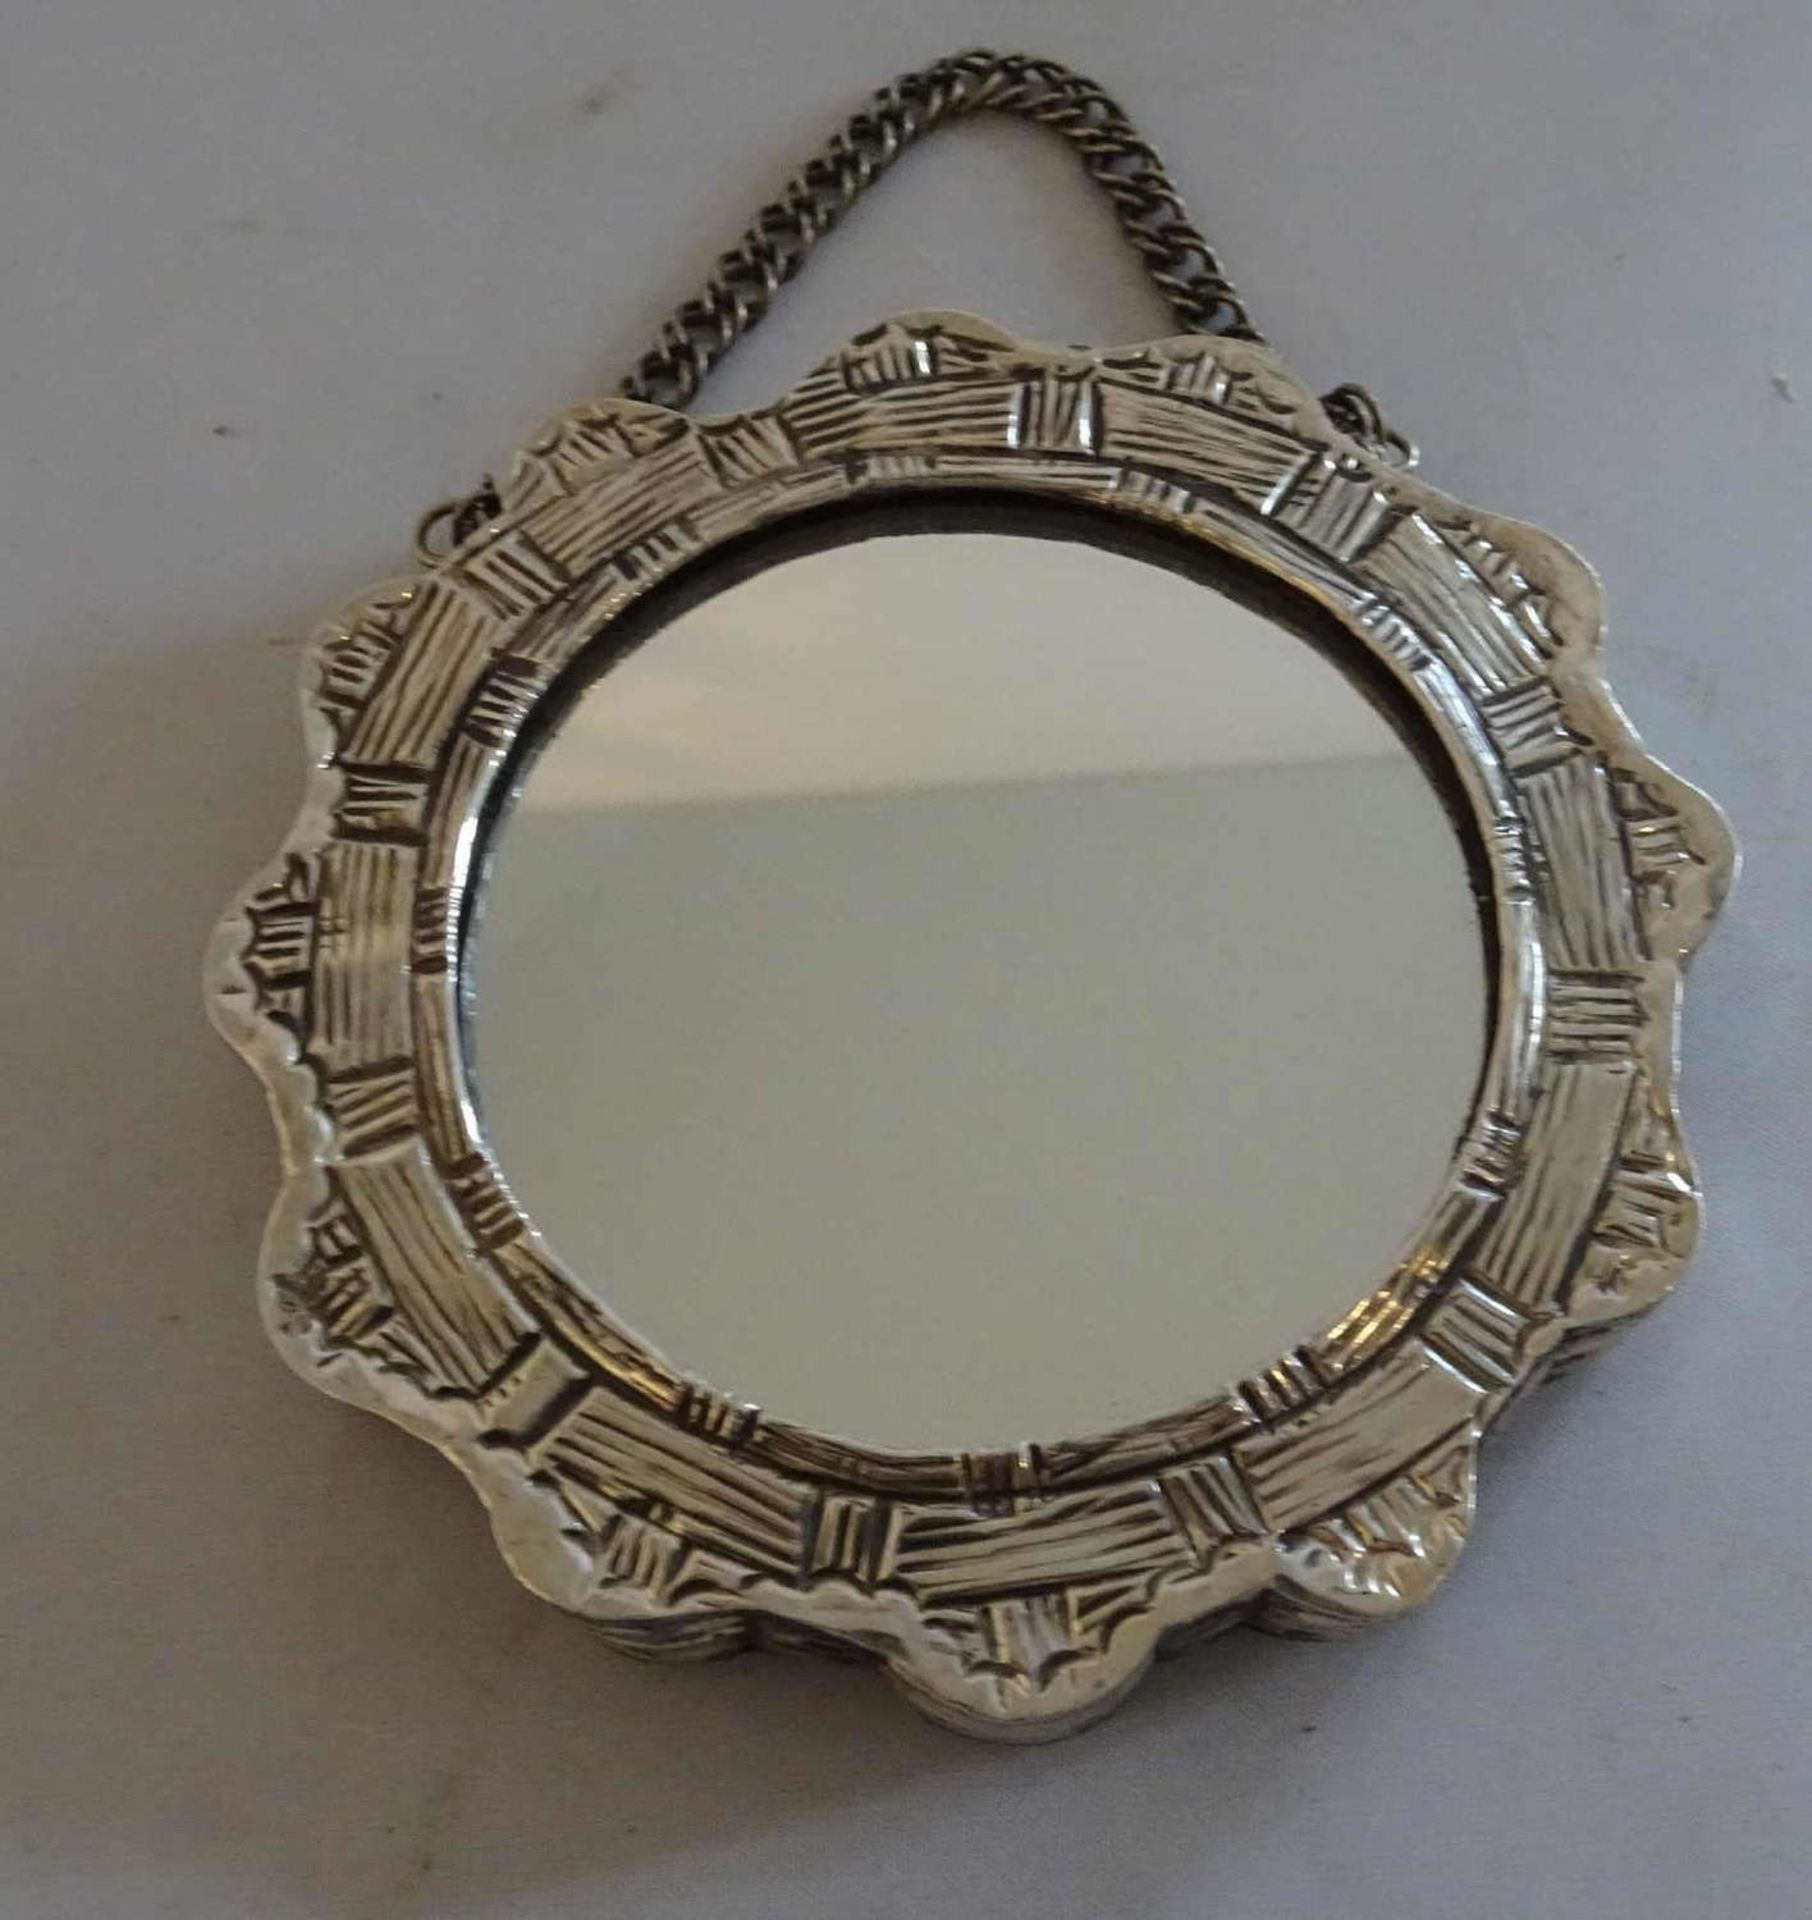 kleiner Handspiegel mit Silbereinfassung. Durchmesser ca. 9,2cm.small hand mirror with silver bezel. - Image 2 of 2